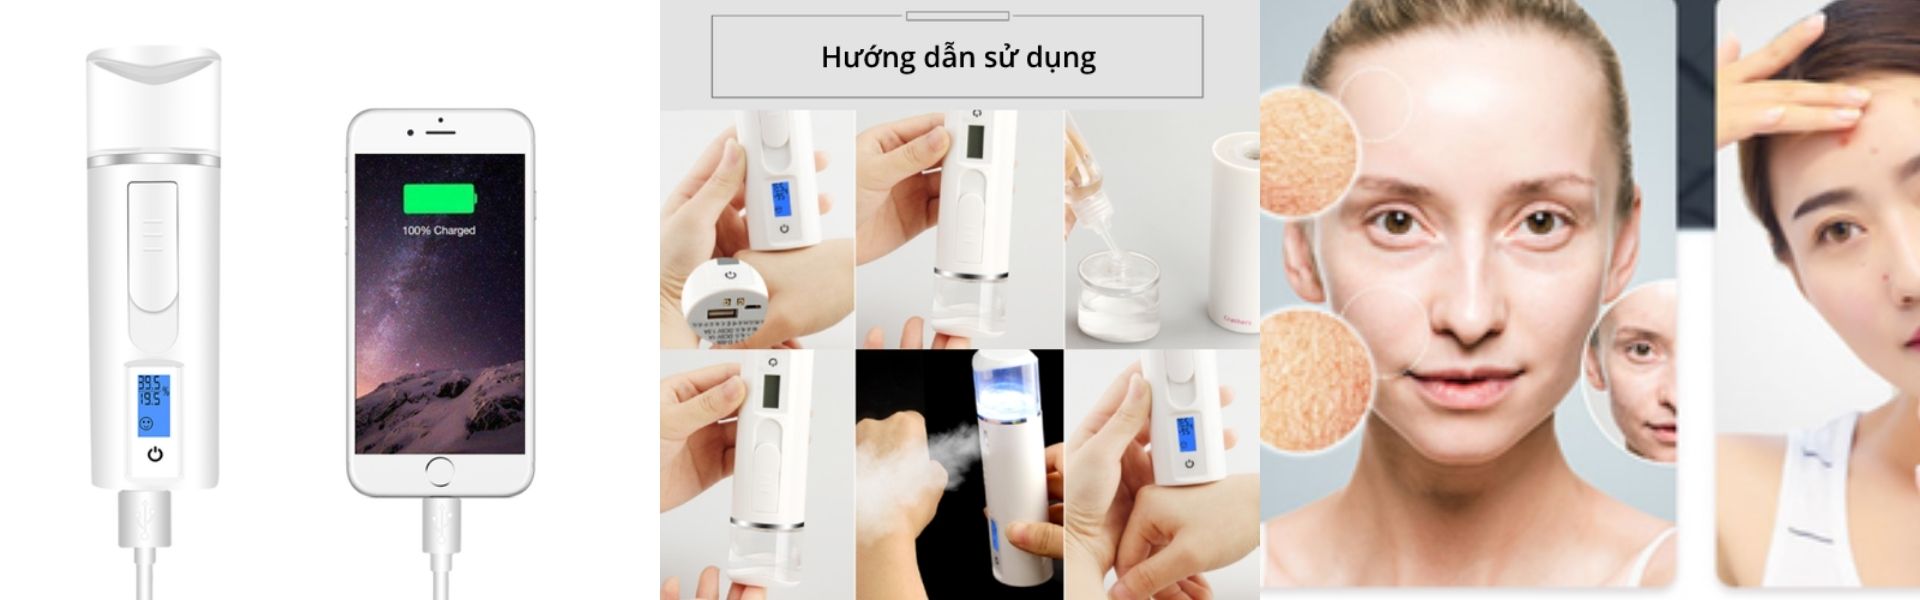 Hướng dẫn sử dụng Máy phun sương tạo ẩm NANO kết hợp cảm biến - Sweet Skin